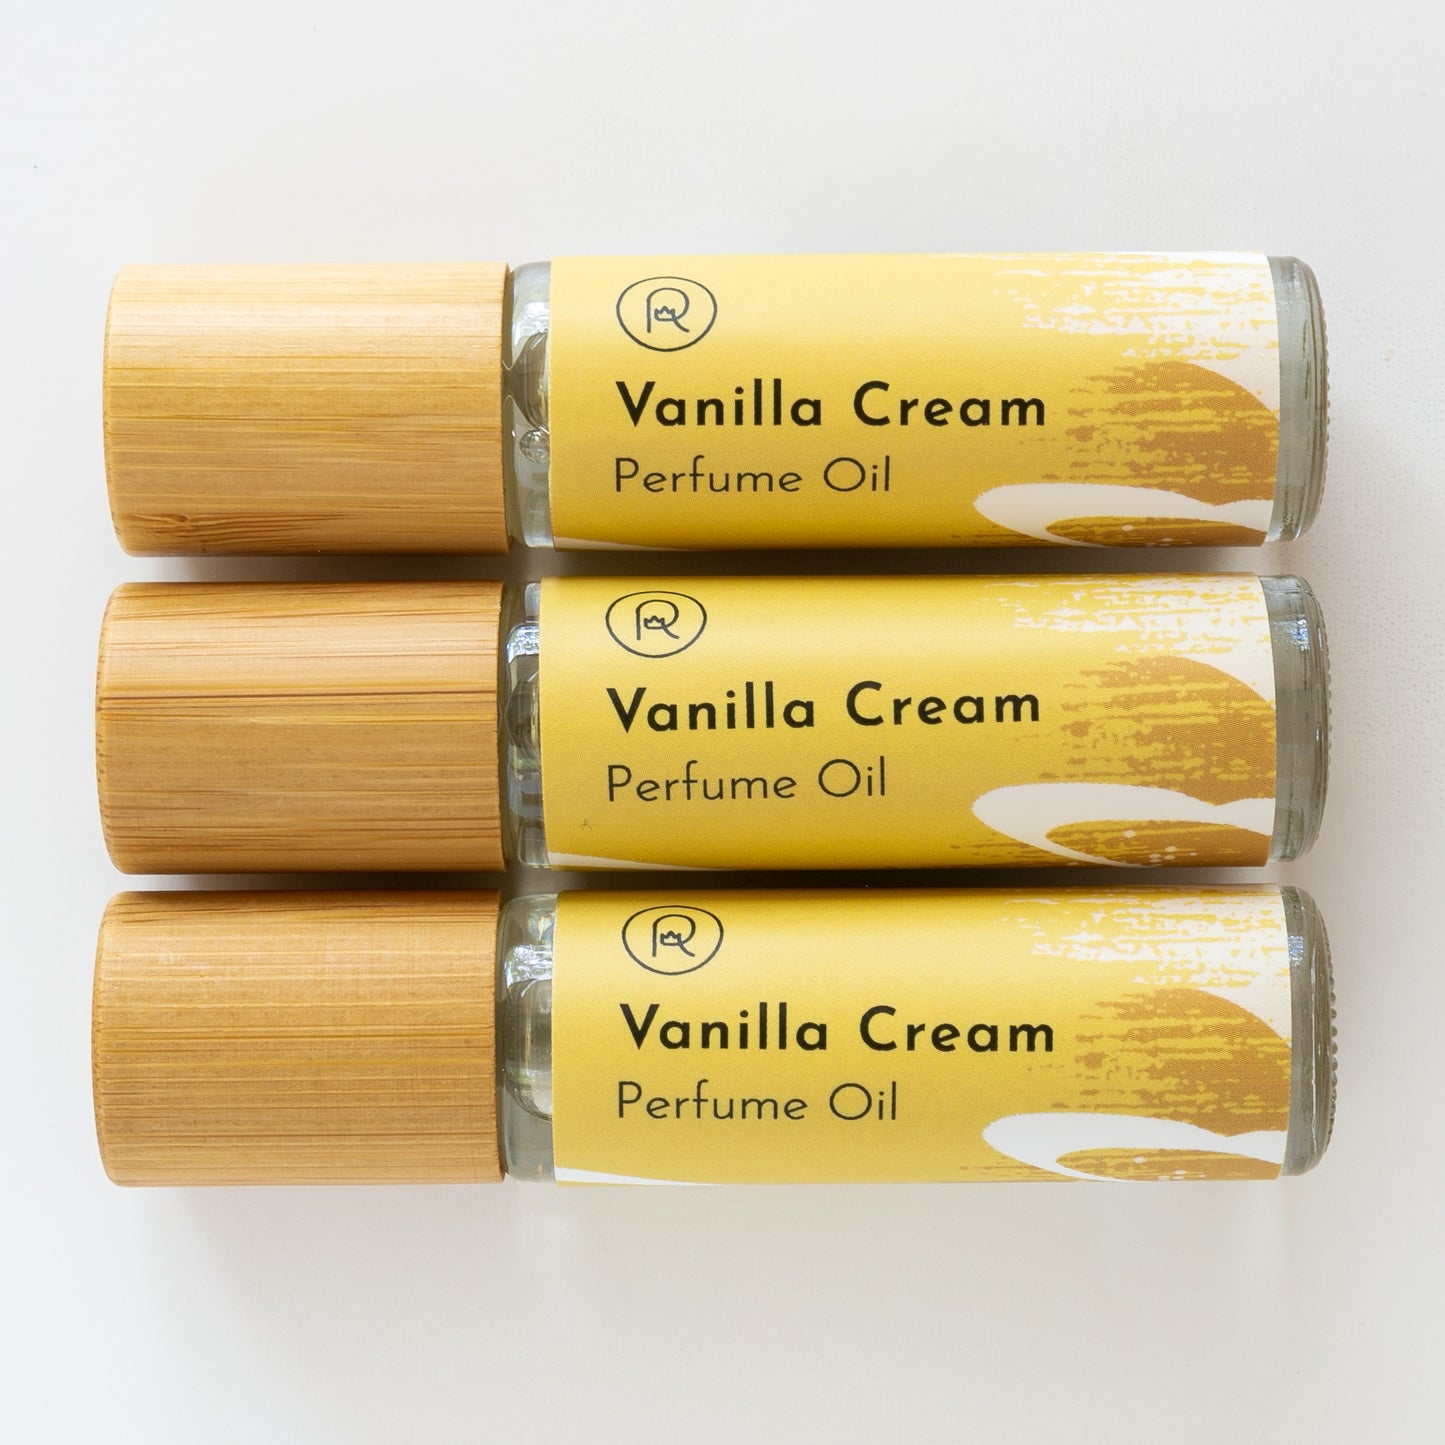 Vanilla Cream Perfume Oil